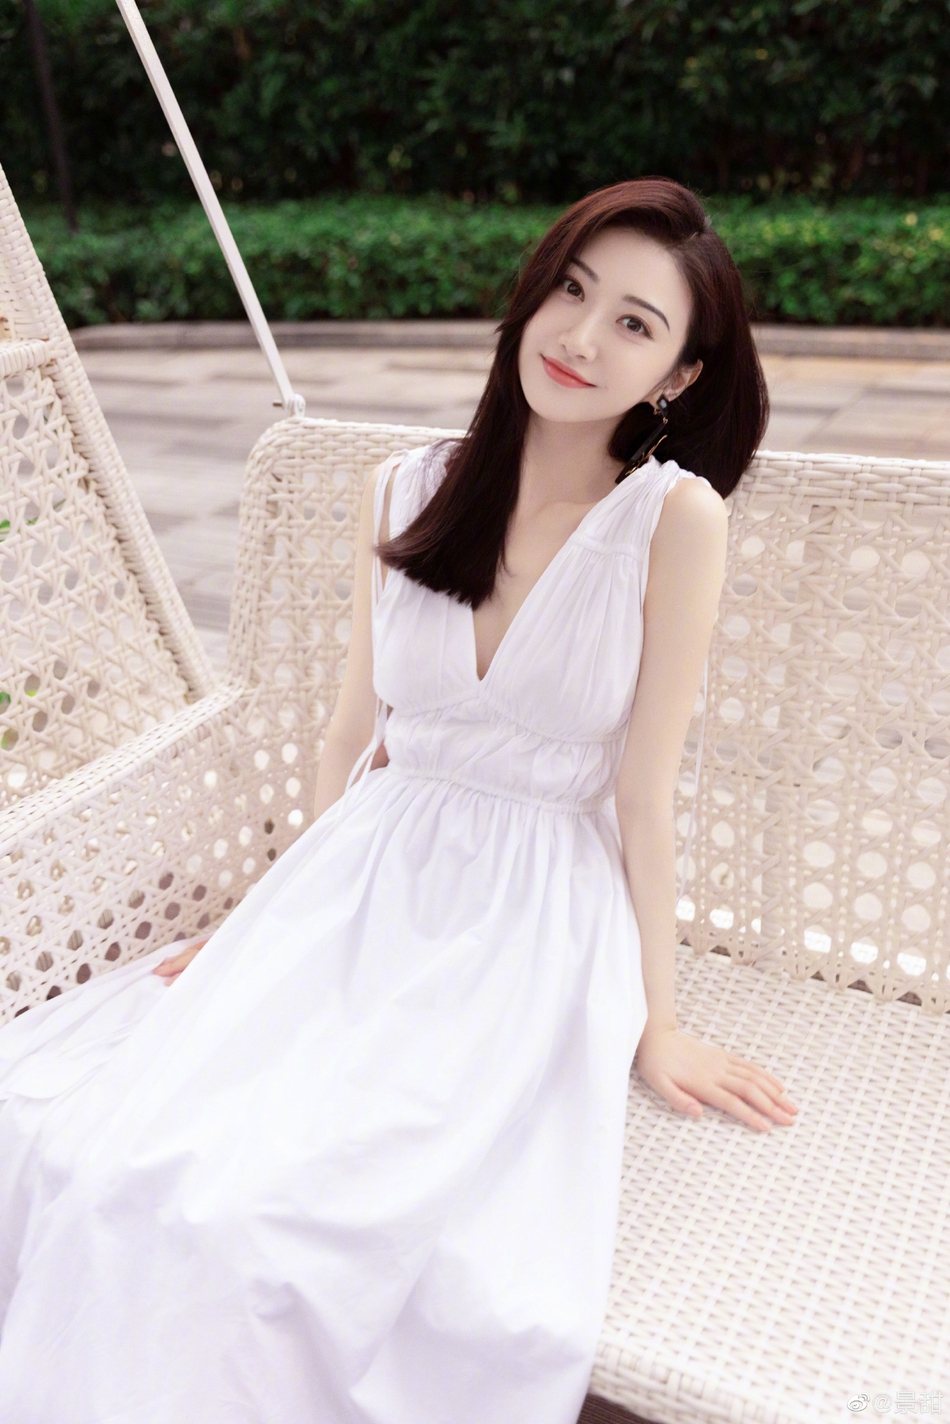 景甜花园写真夏日氛围满满一袭白色连衣裙清新优雅